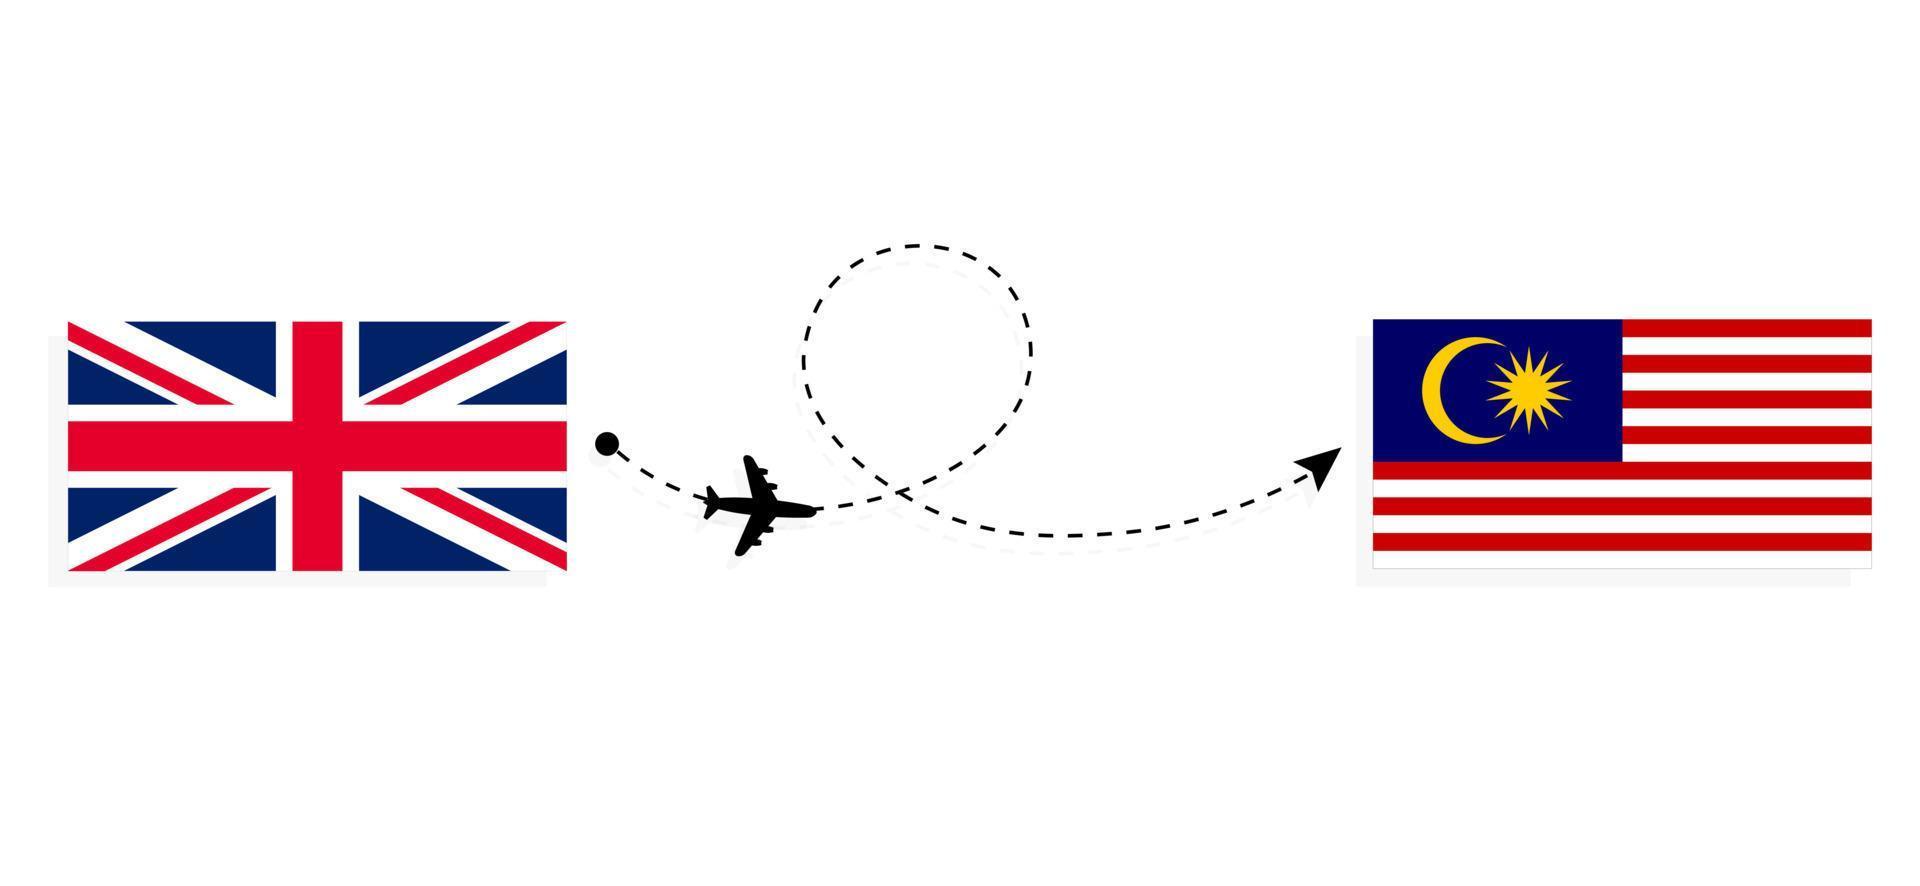 flyg och resor från Storbritannien till Malaysia med passagerarflygplan vektor